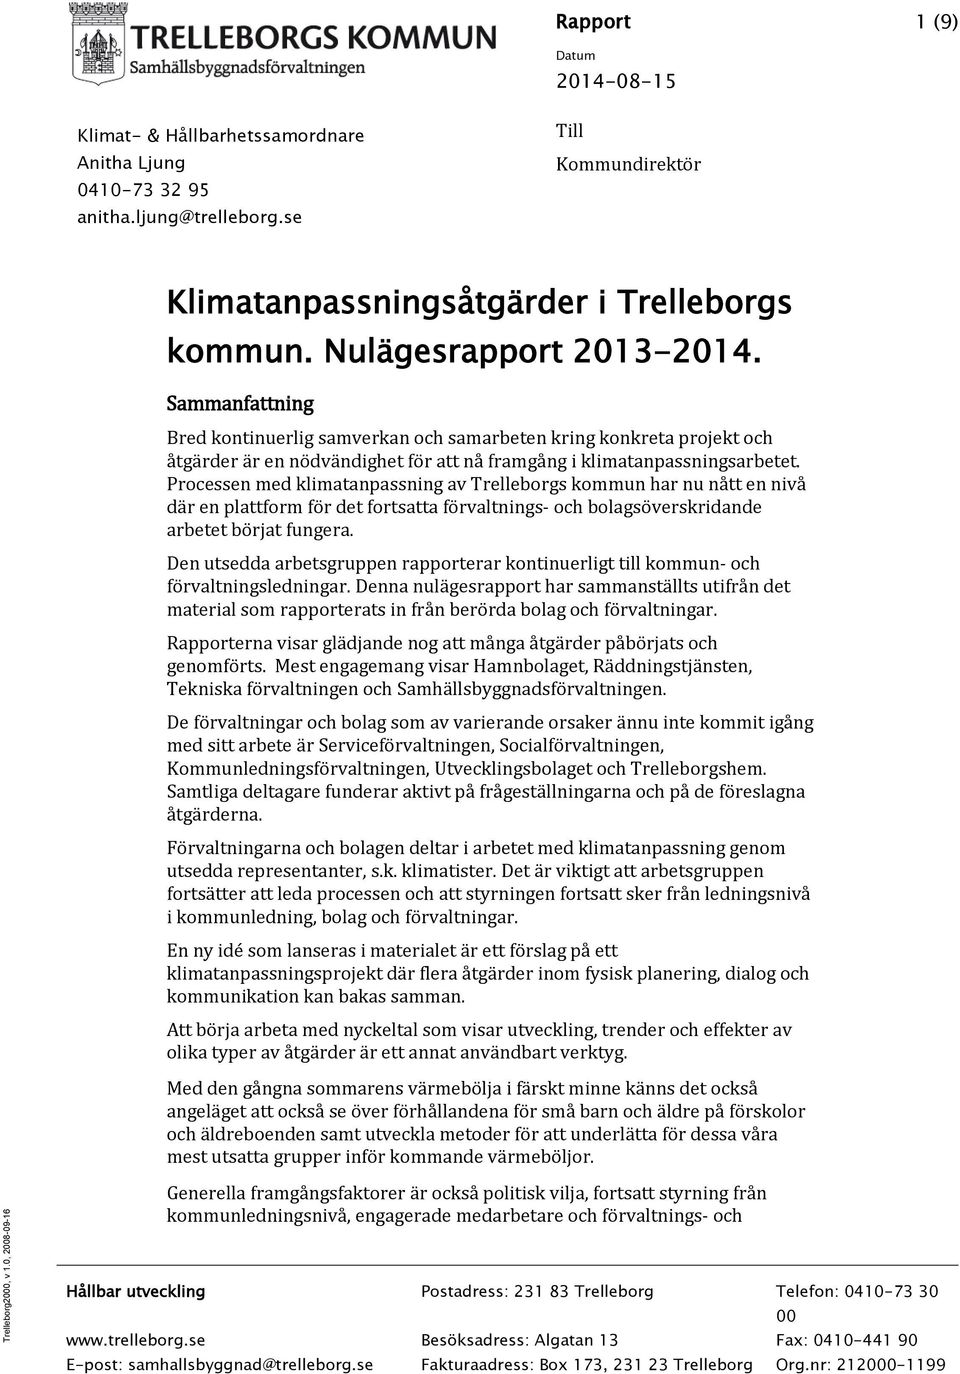 Processen med klimatanpassning av Trelleborgs kommun har nu nått en nivå där en plattform för det fortsatta förvaltnings- och bolagsöverskridande arbetet börjat fungera.